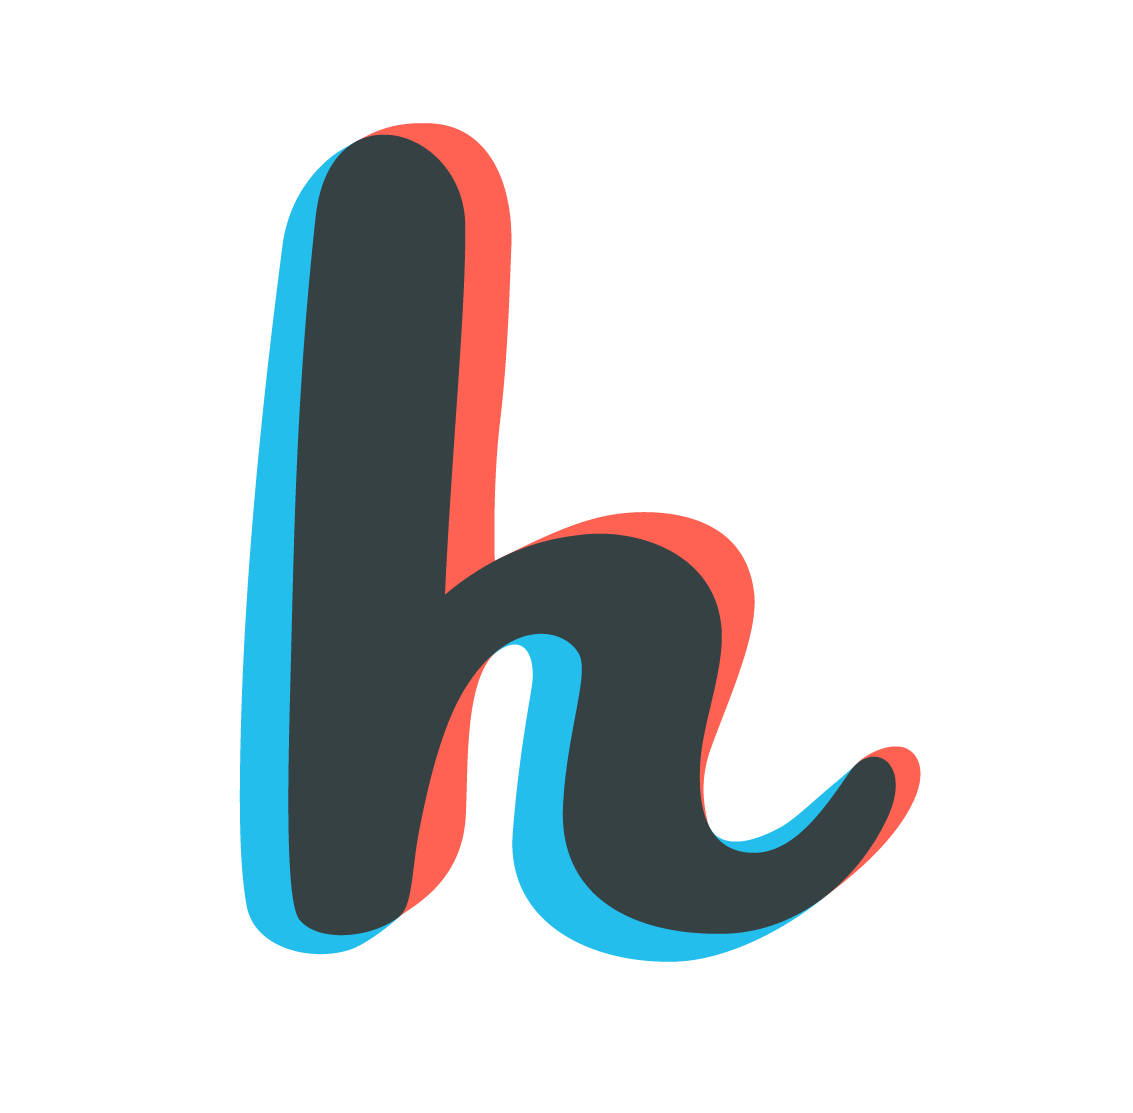 H Logo - Inspirational logo design. Letter H. Really like the 